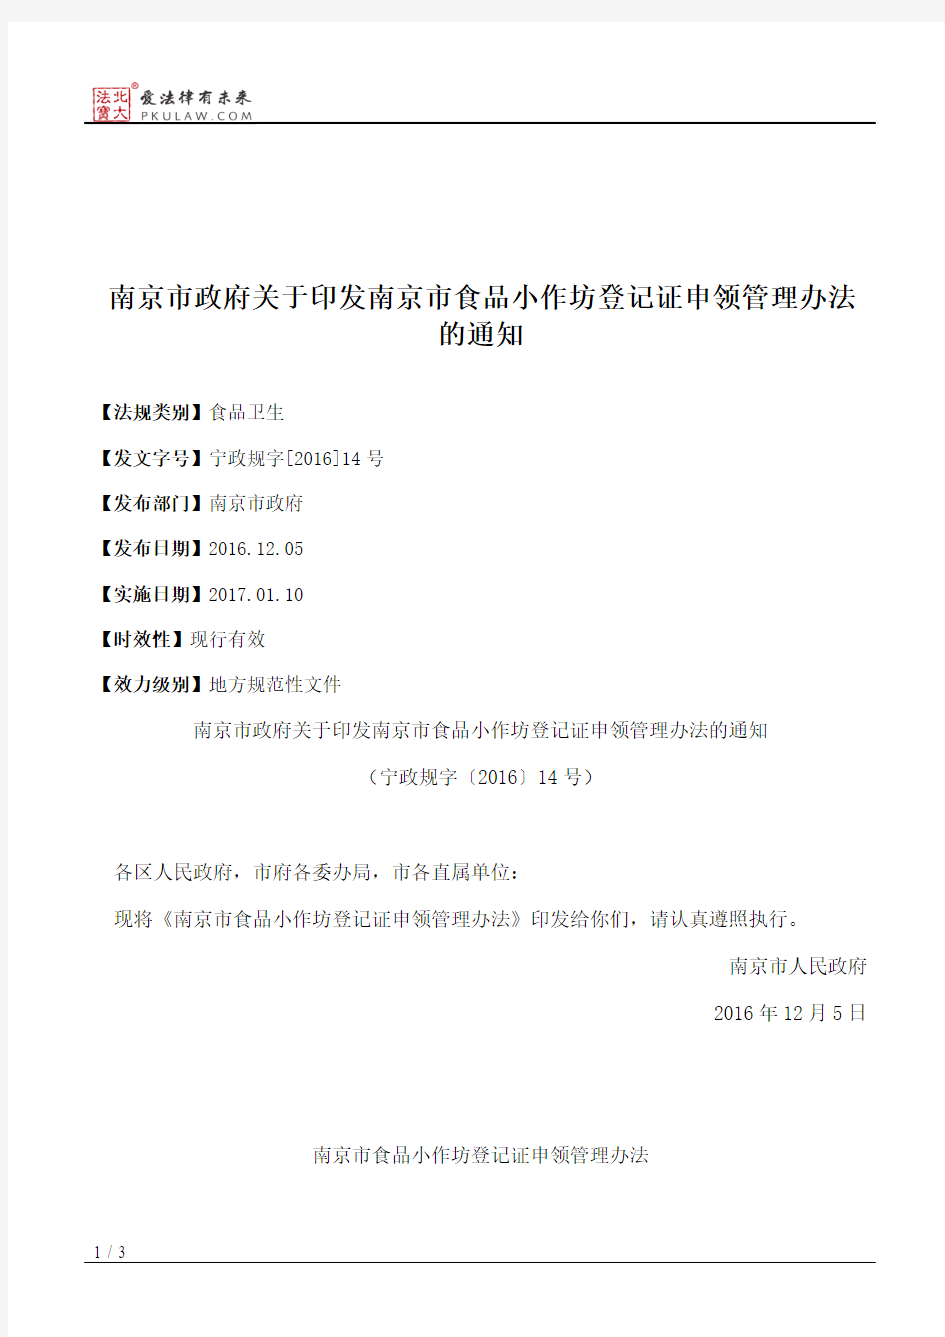 南京市政府关于印发南京市食品小作坊登记证申领管理办法的通知